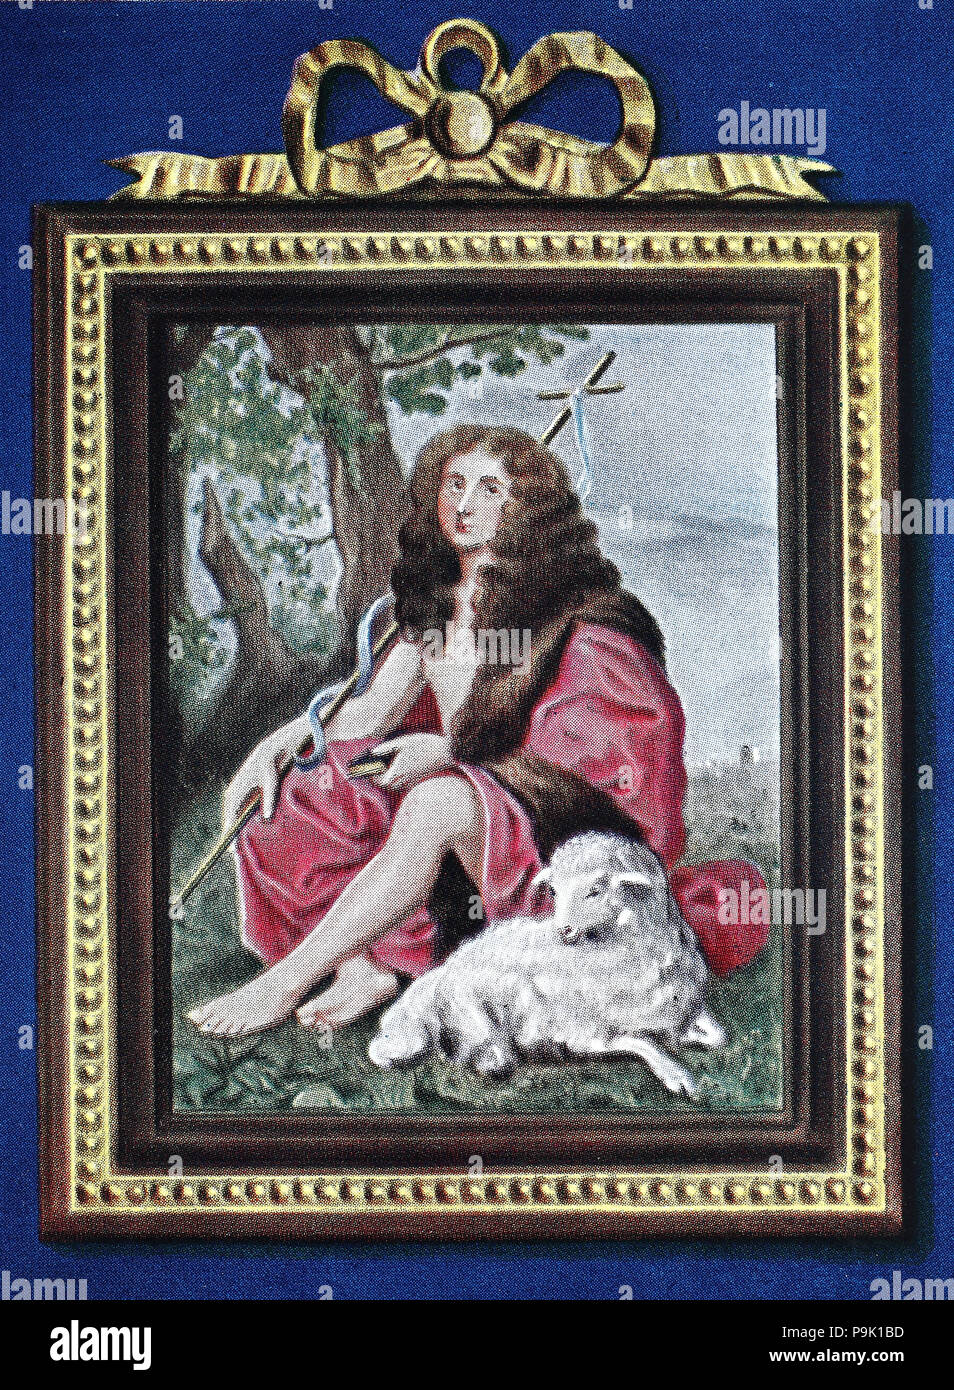 Felipe, Duque de OrlÃ©ans, 21 de septiembre de 1640 â€" el 9 de junio de 1701, era el hijo menor de Luis XIII de Francia y su esposa, Ana de Austria, mejor reproducción digital de un original de impresión desde el año 1900 Foto de stock